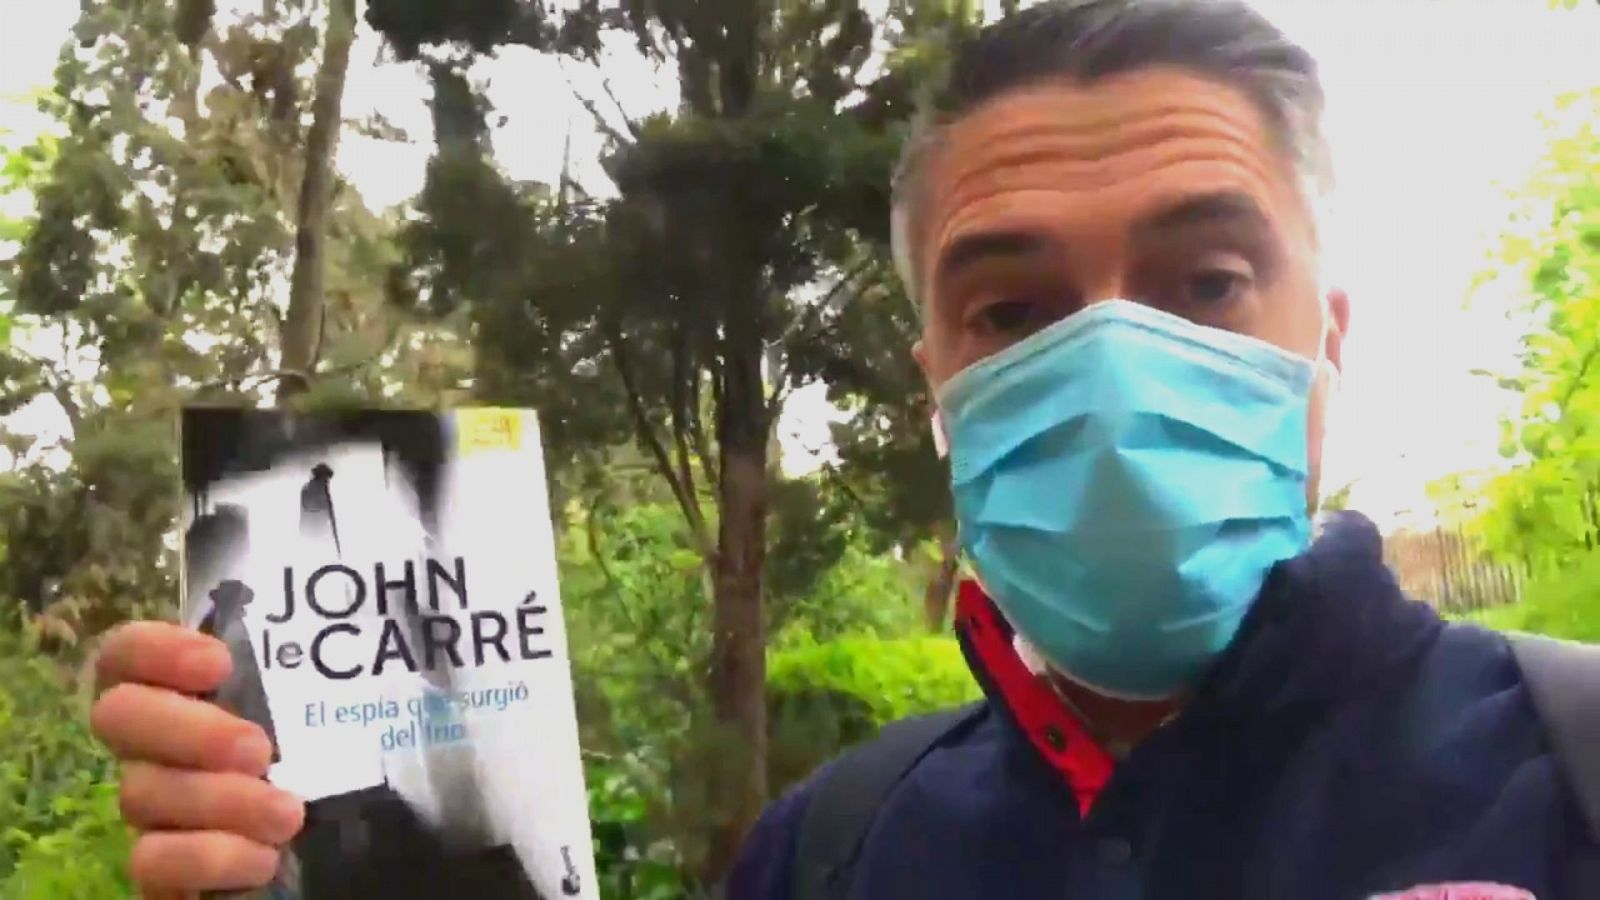 Carlos Franganillo sigue la cadena de recomendaciones del Telediario con un libro de John Le Carré